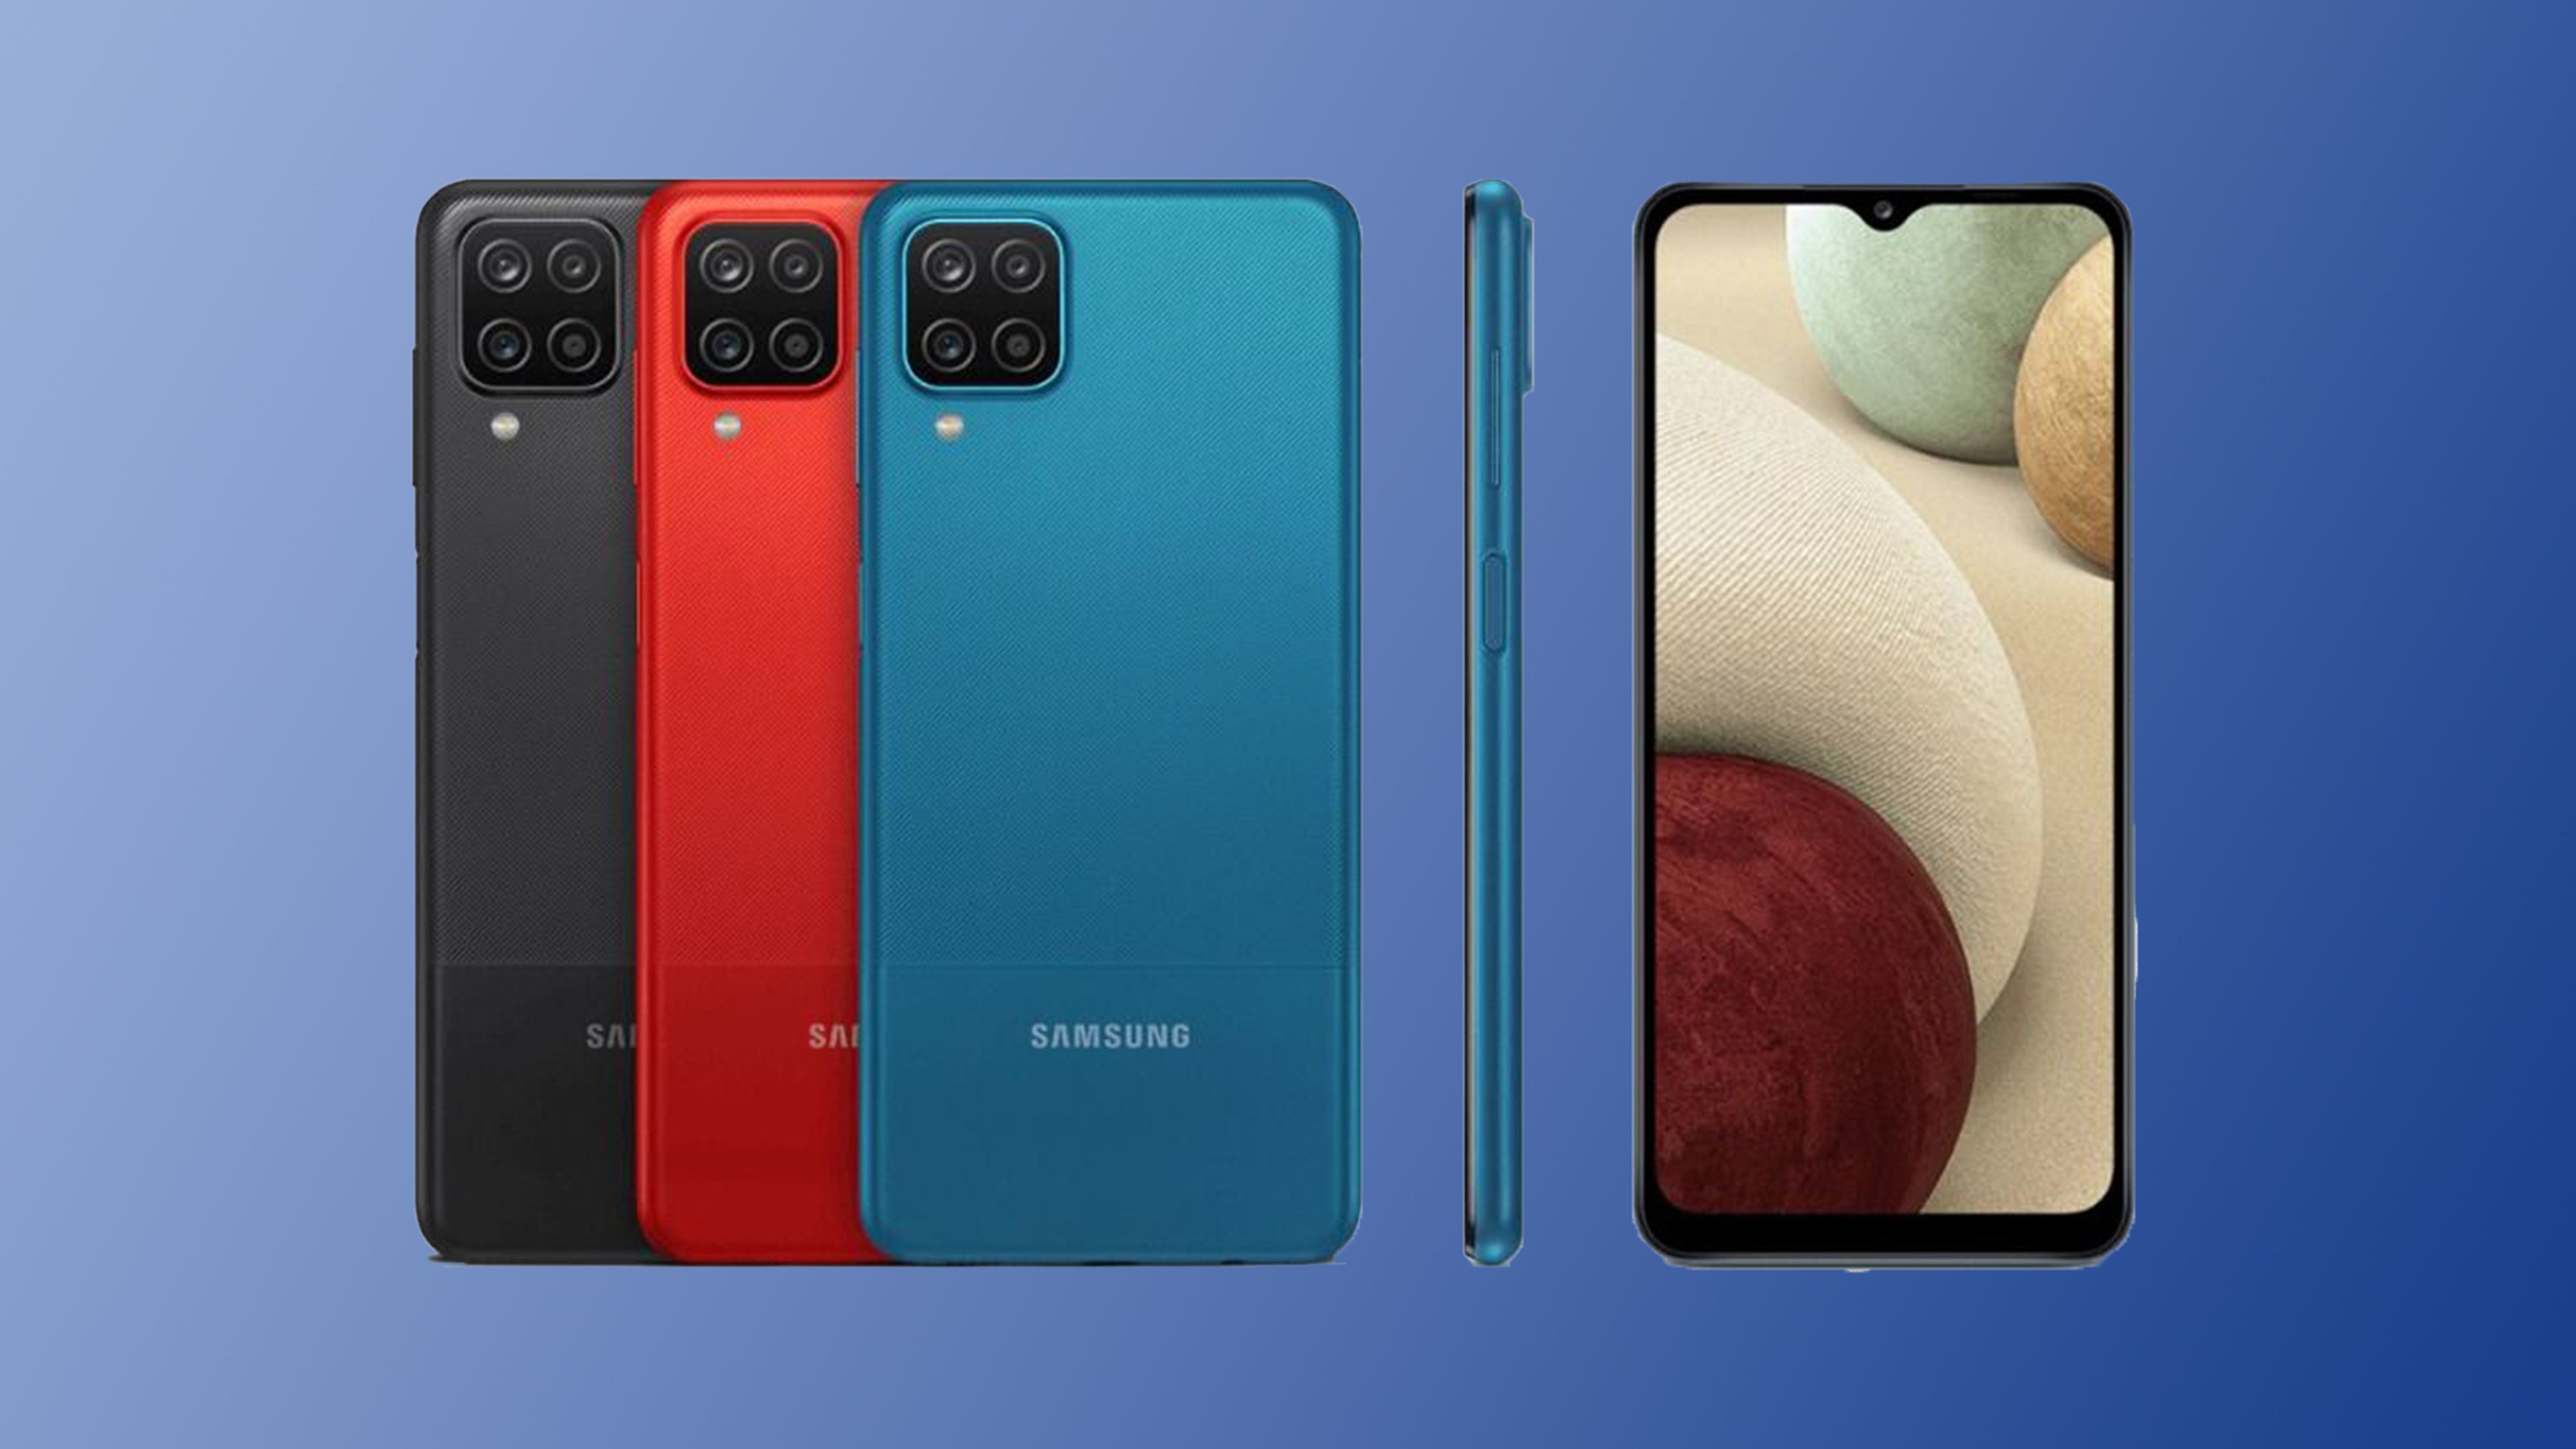 Samsung quiere competir con Xiaomi en la gama baja, se filtra su nuevo móvil económico con 5G